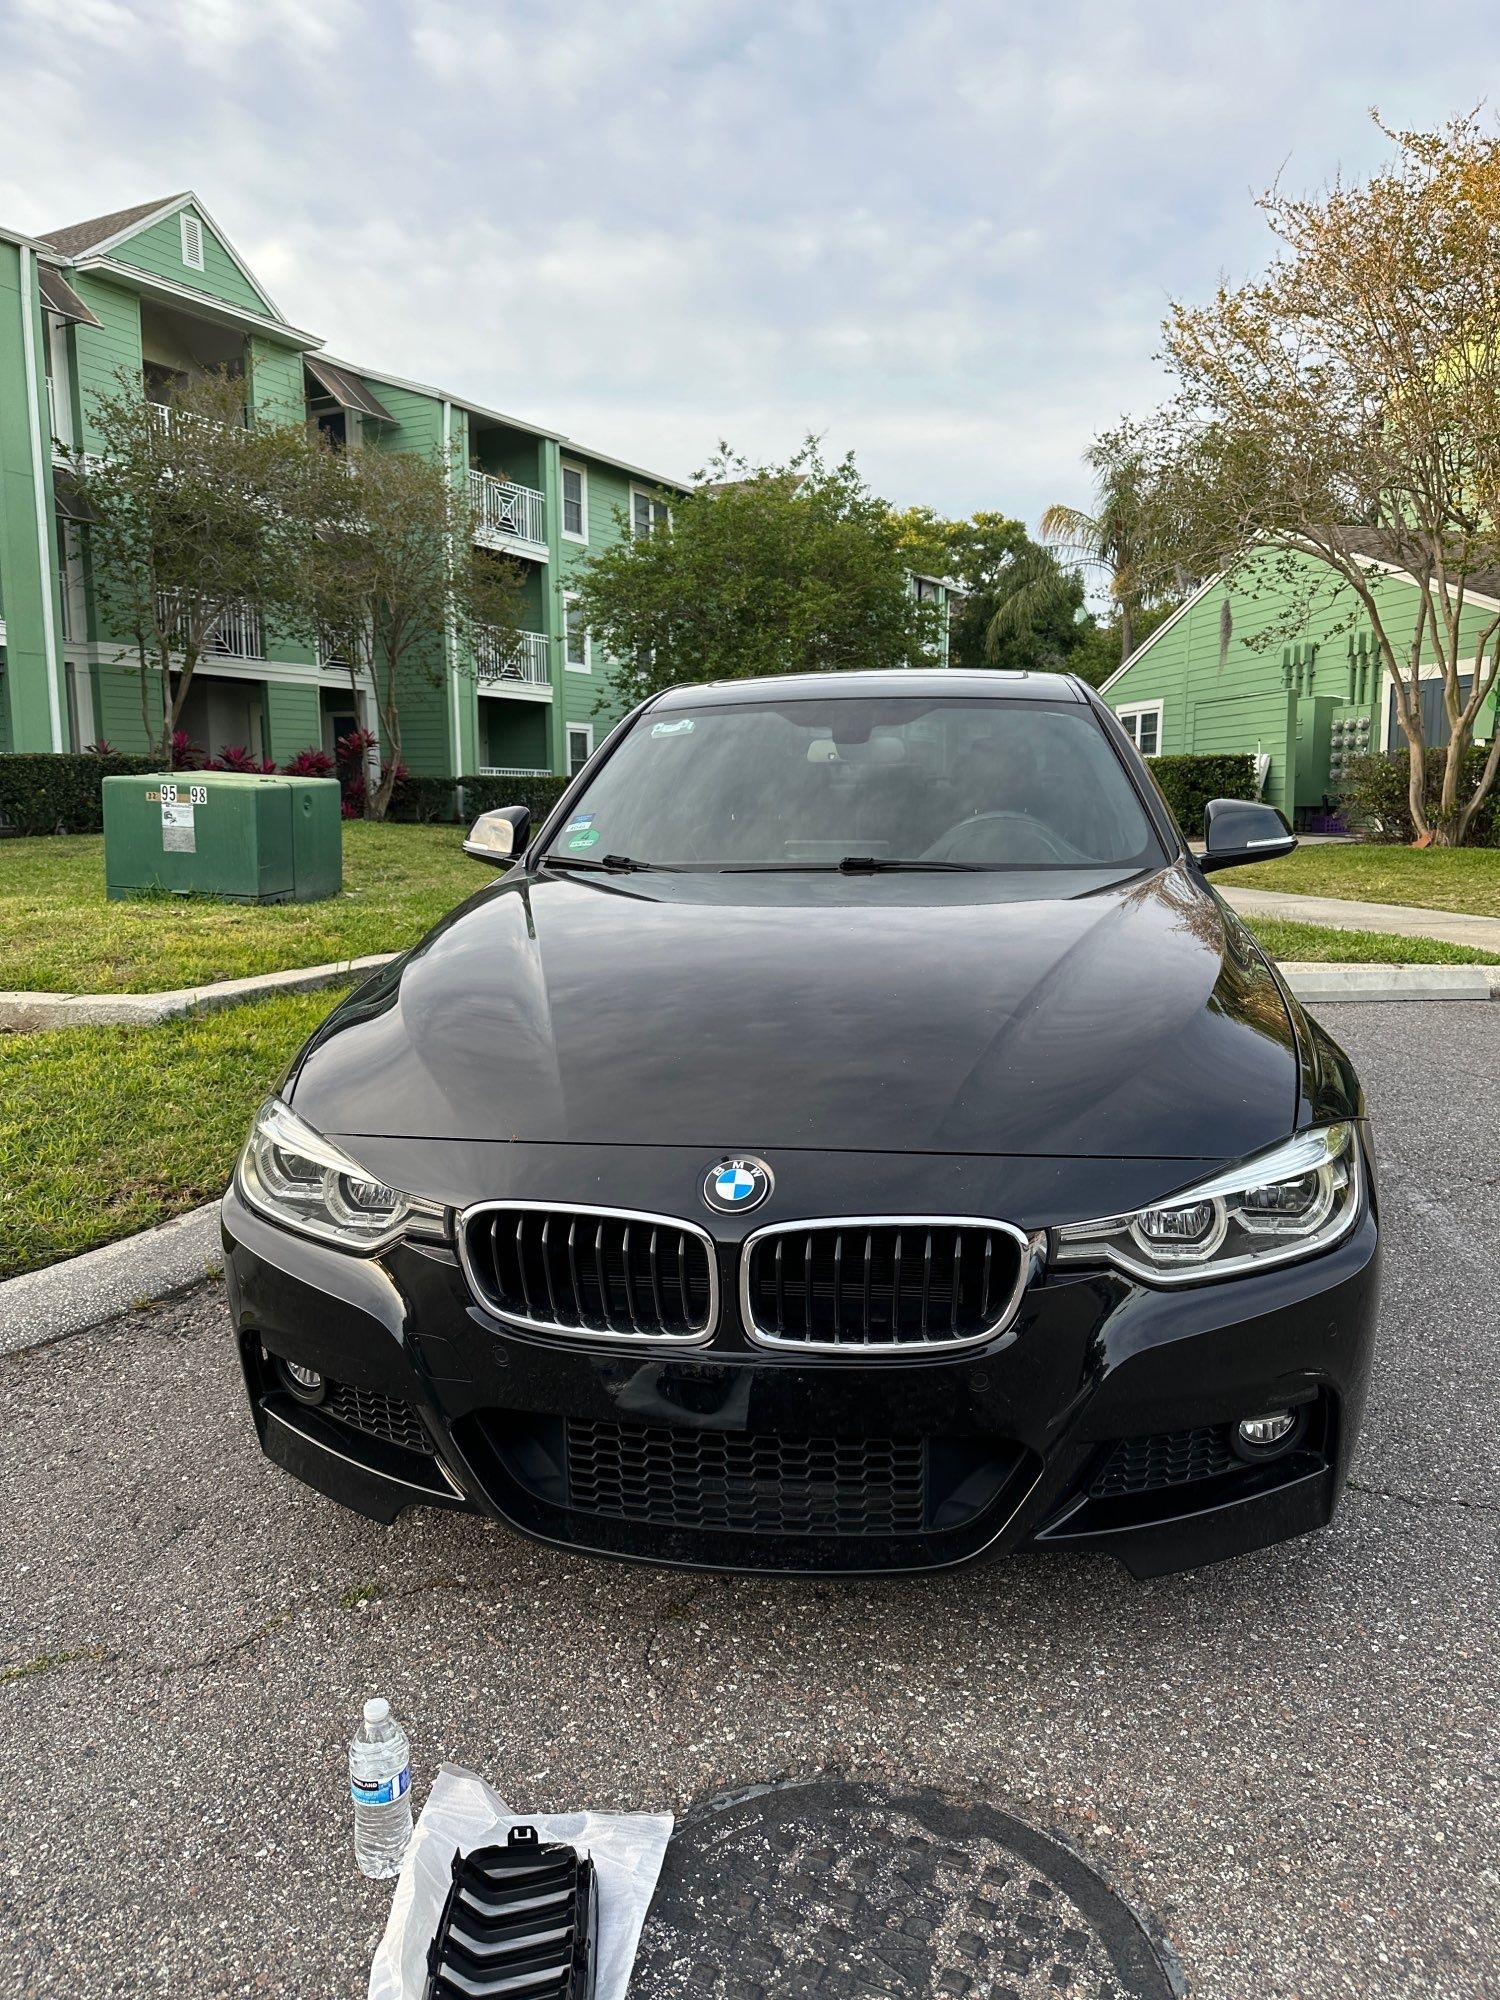 Grelhas BMW série5 (novas)